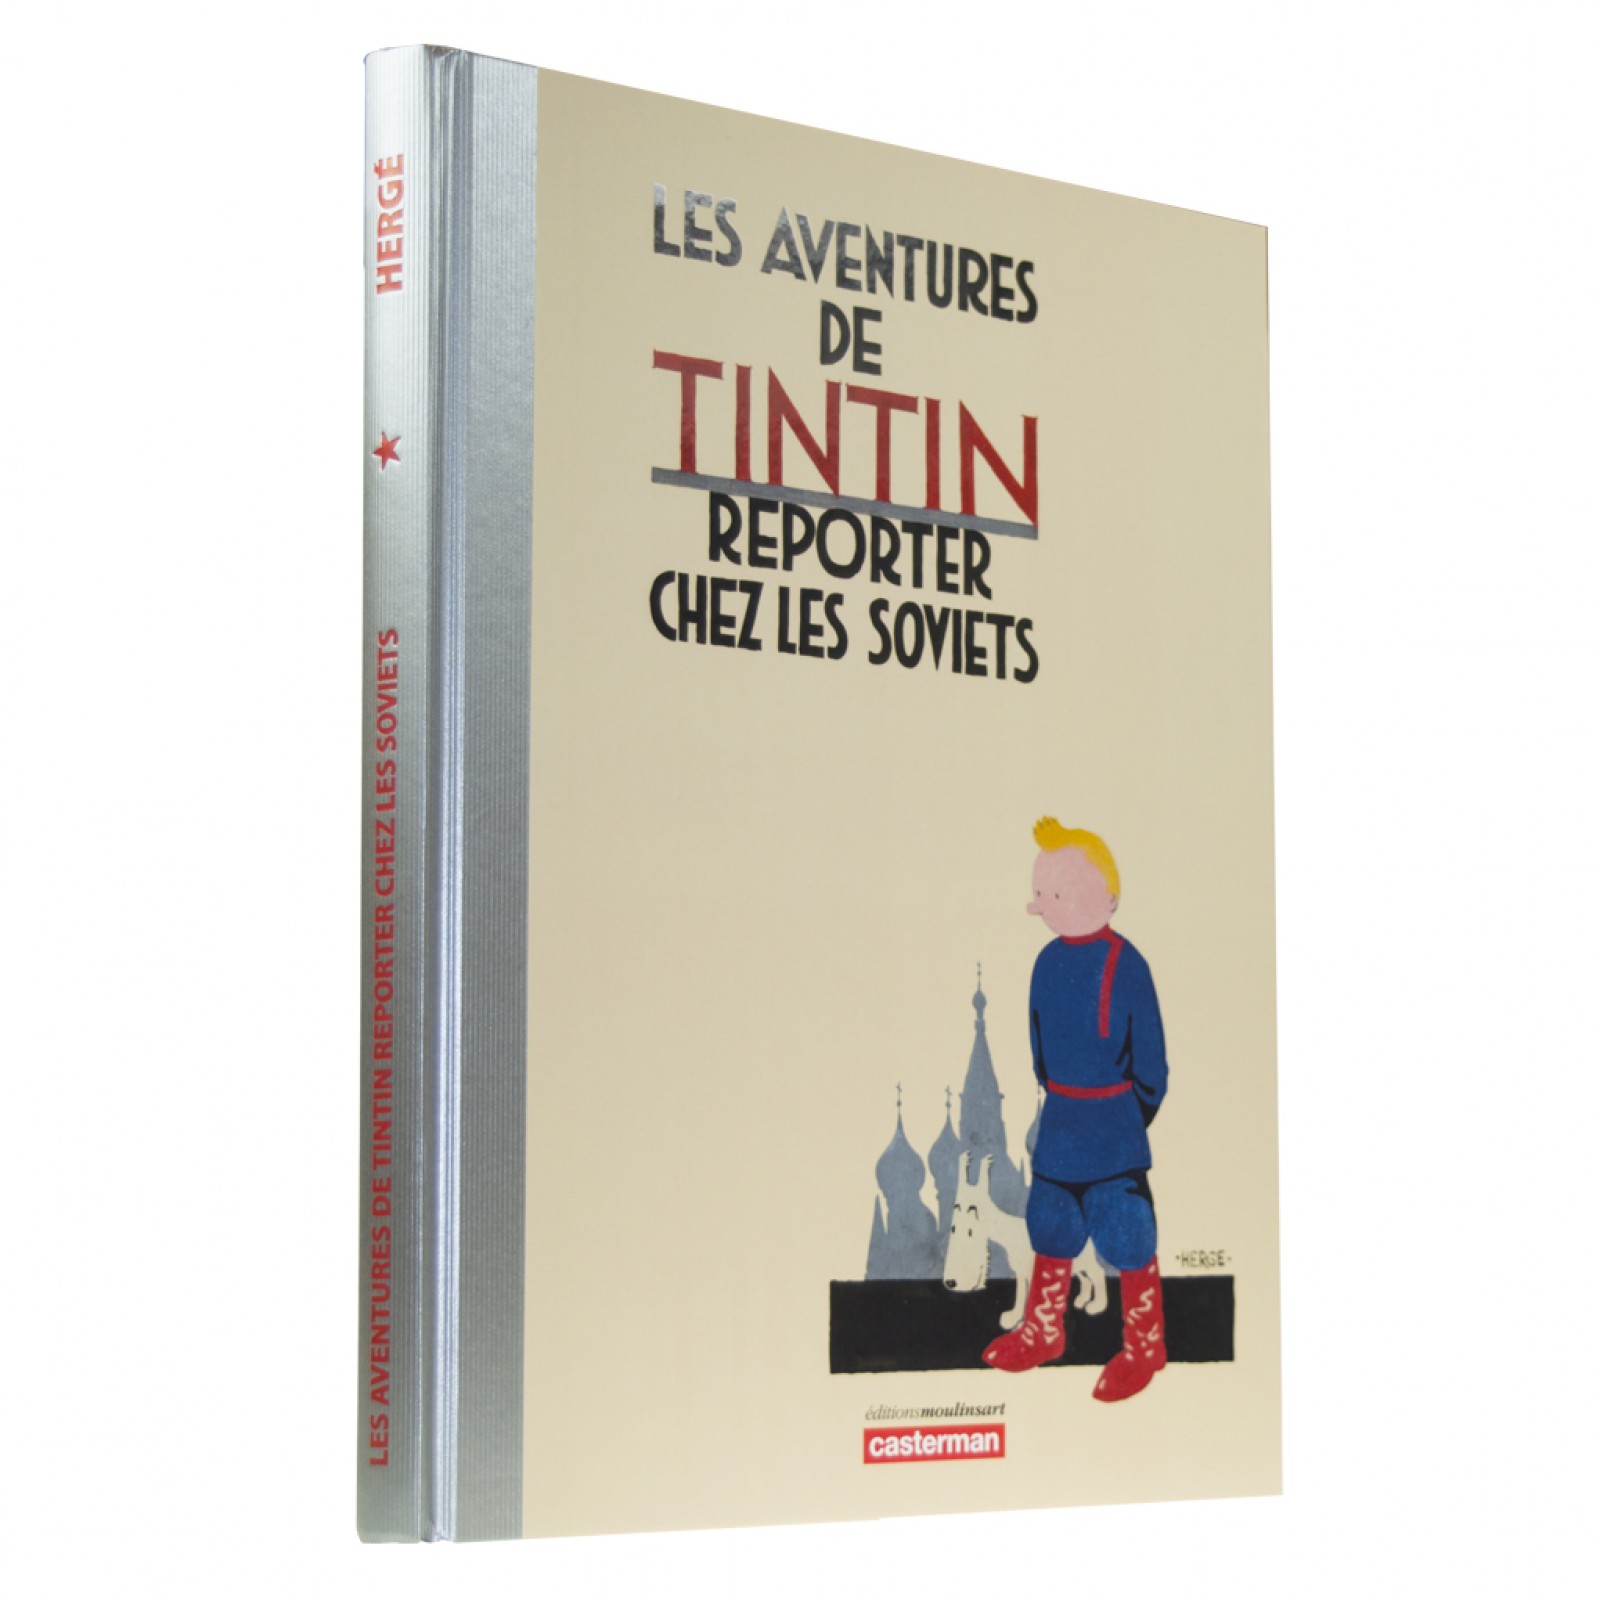 Les aventures de Tintin au pays des soviets